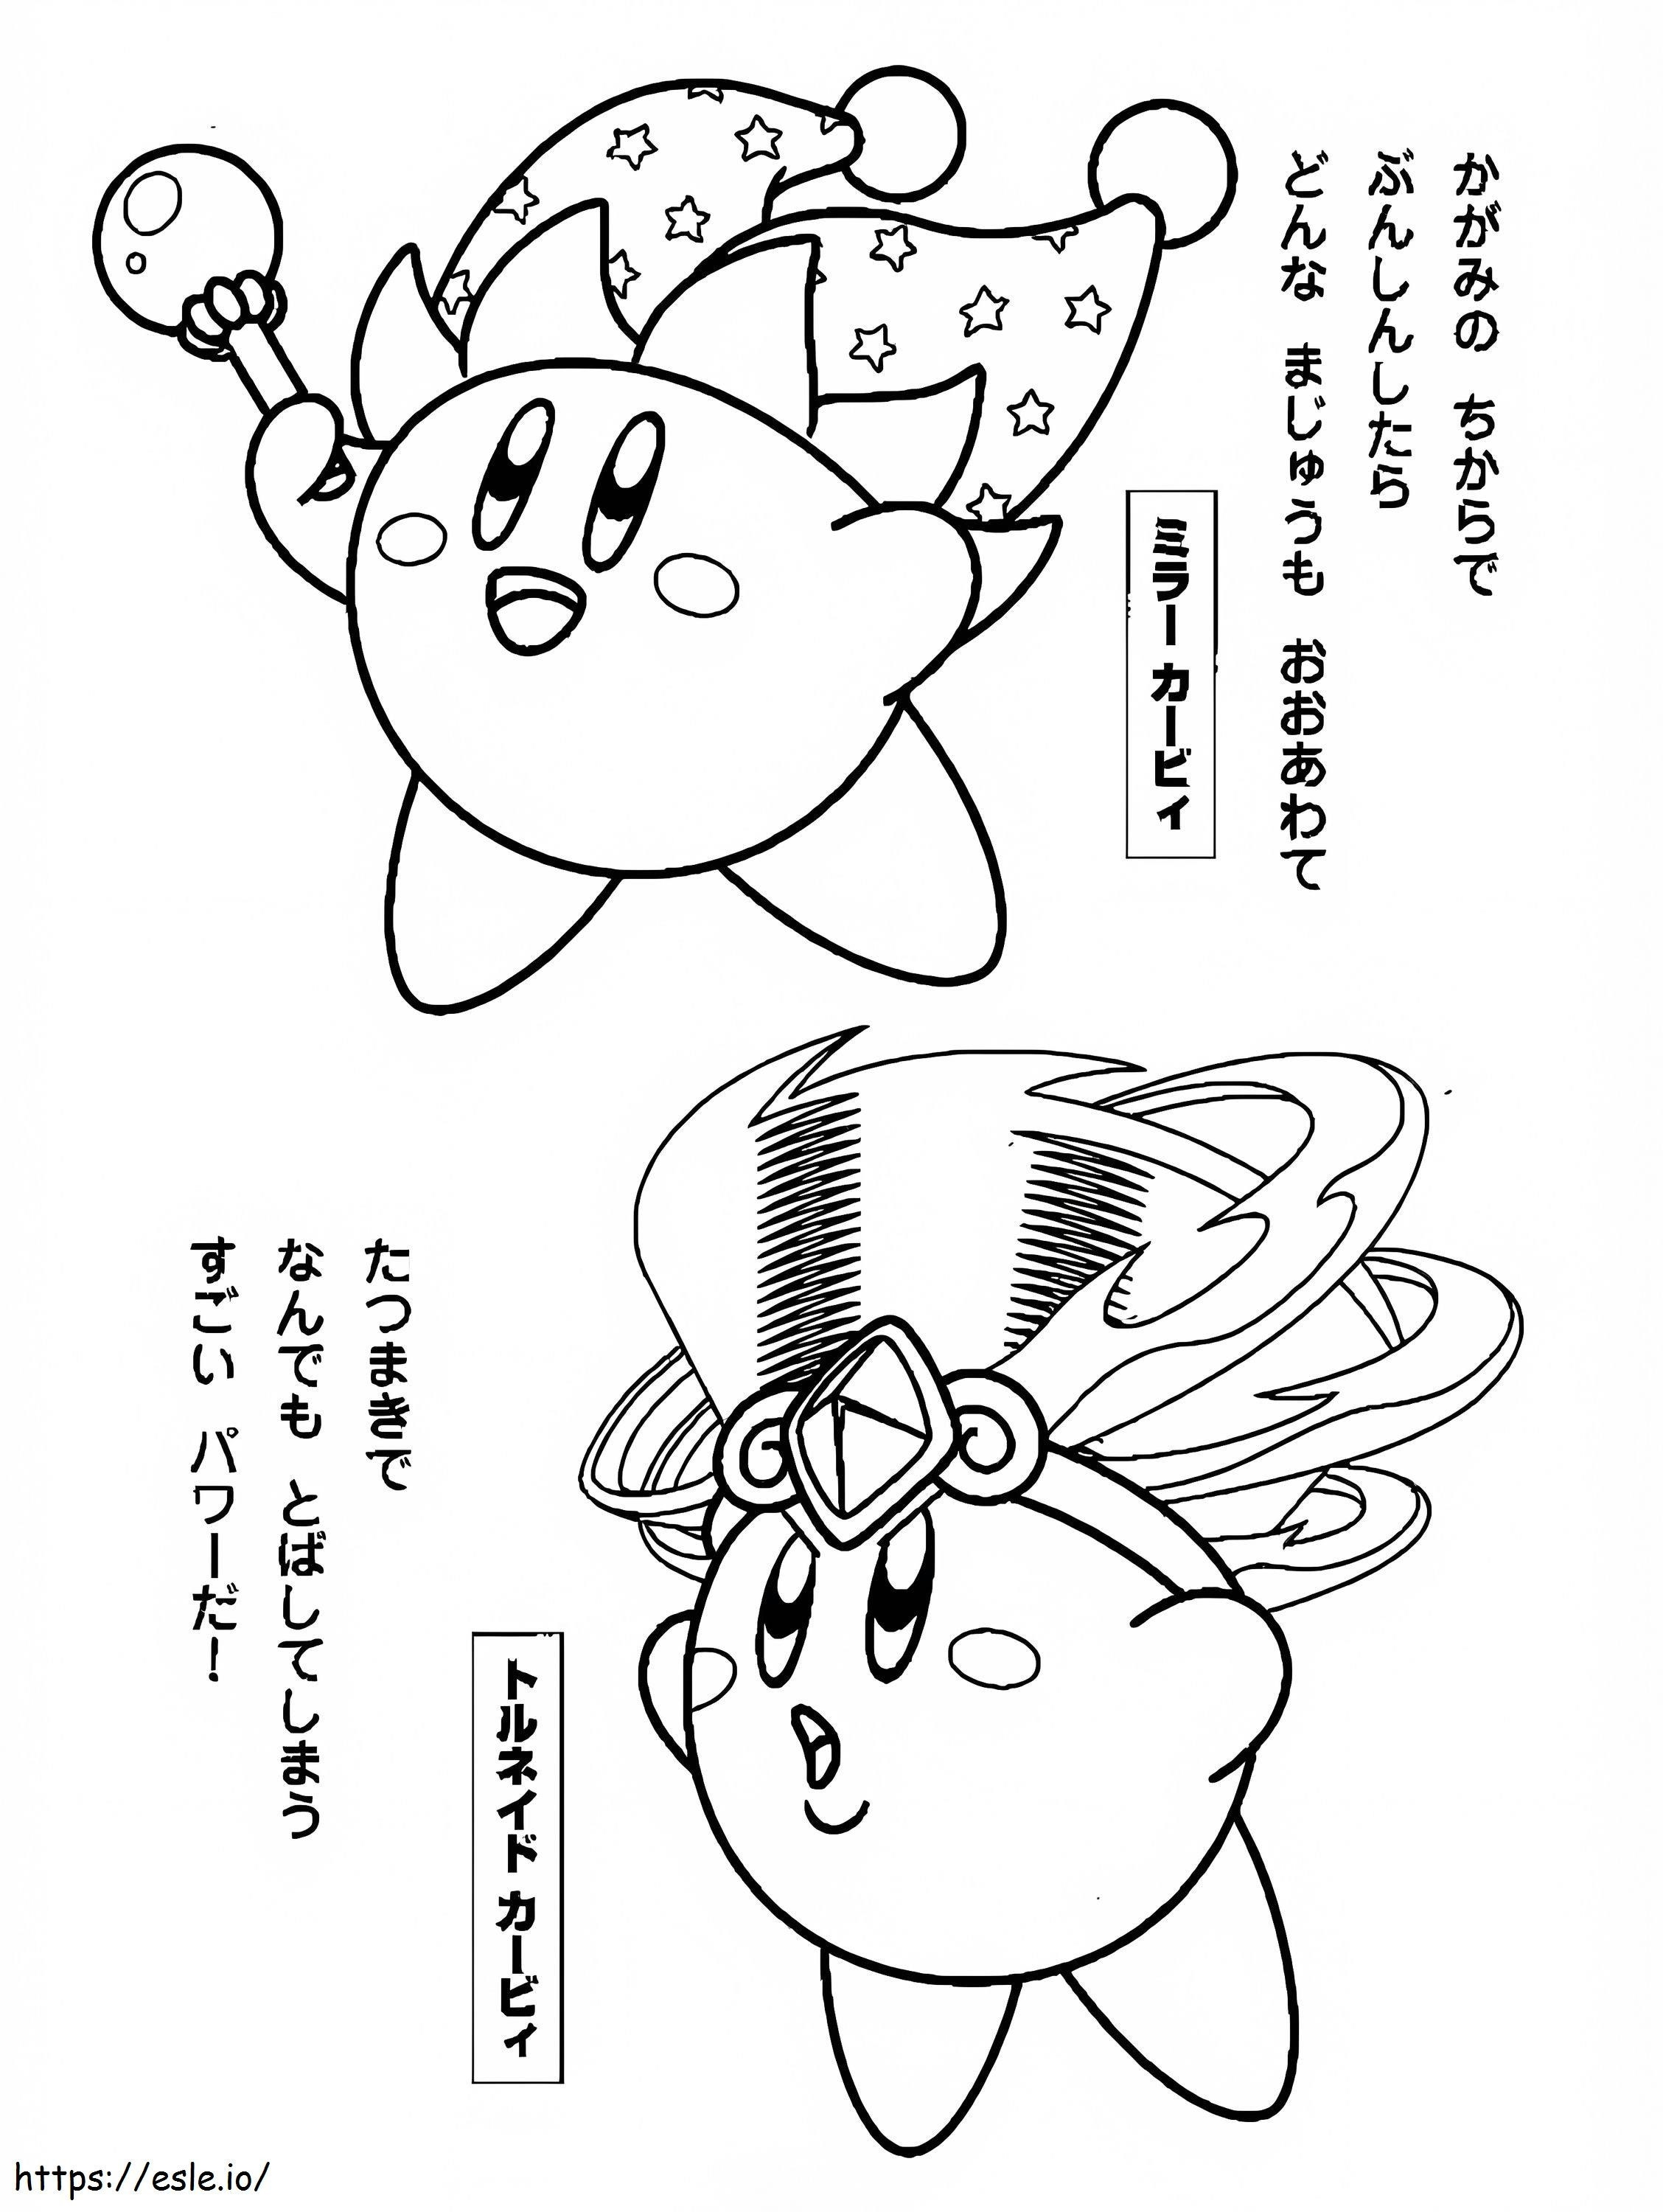 Kirby-Spaß ausmalbilder